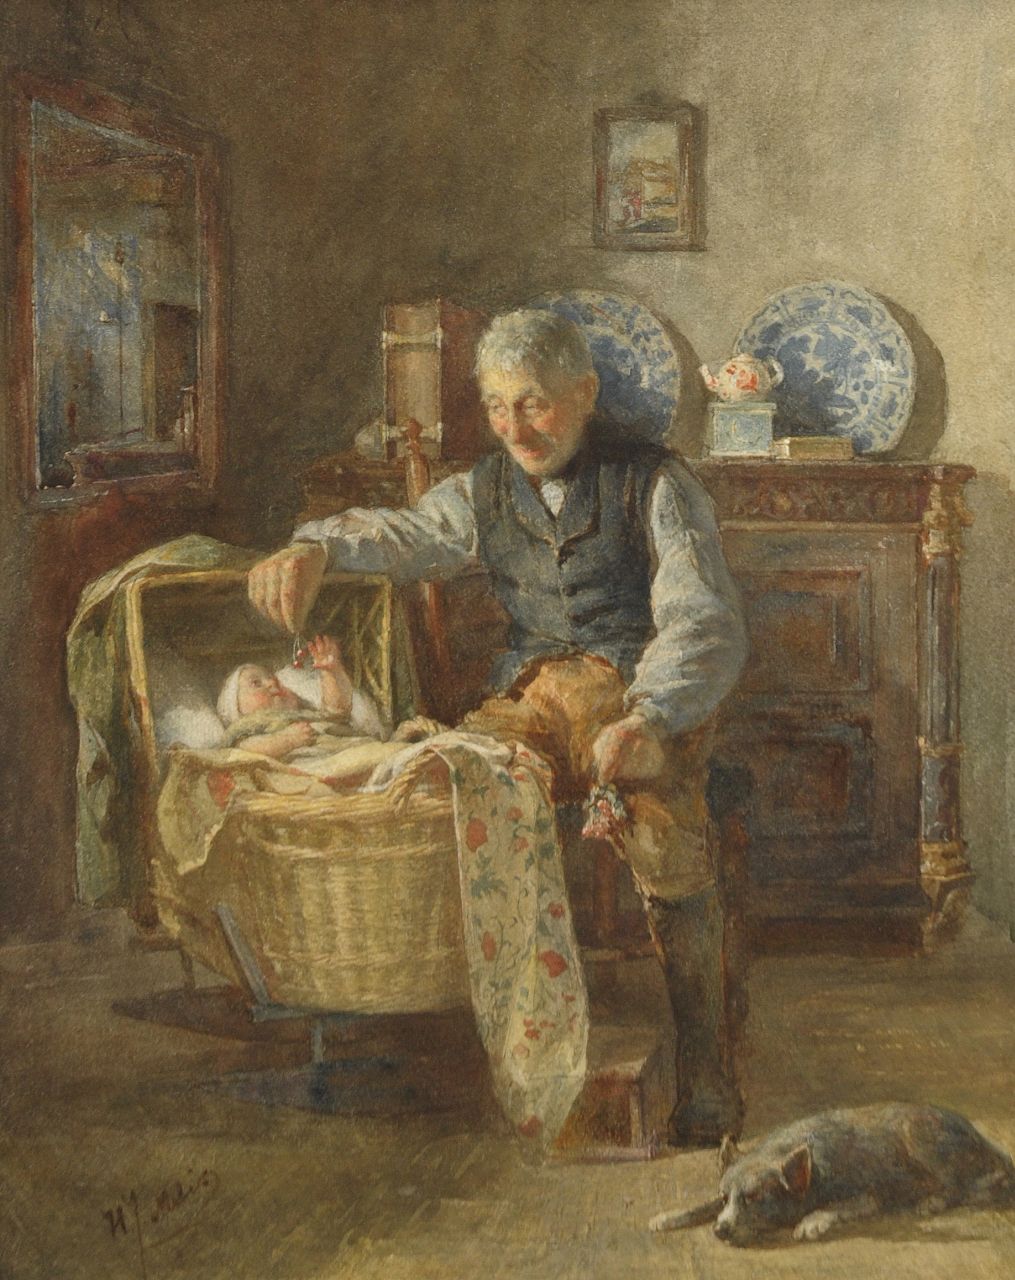 Mélis H.J.  | Henricus Joannes Mélis, De eerste kersjes van grootvader, aquarel op papier 50,8 x 38,7 cm, gesigneerd linksonder